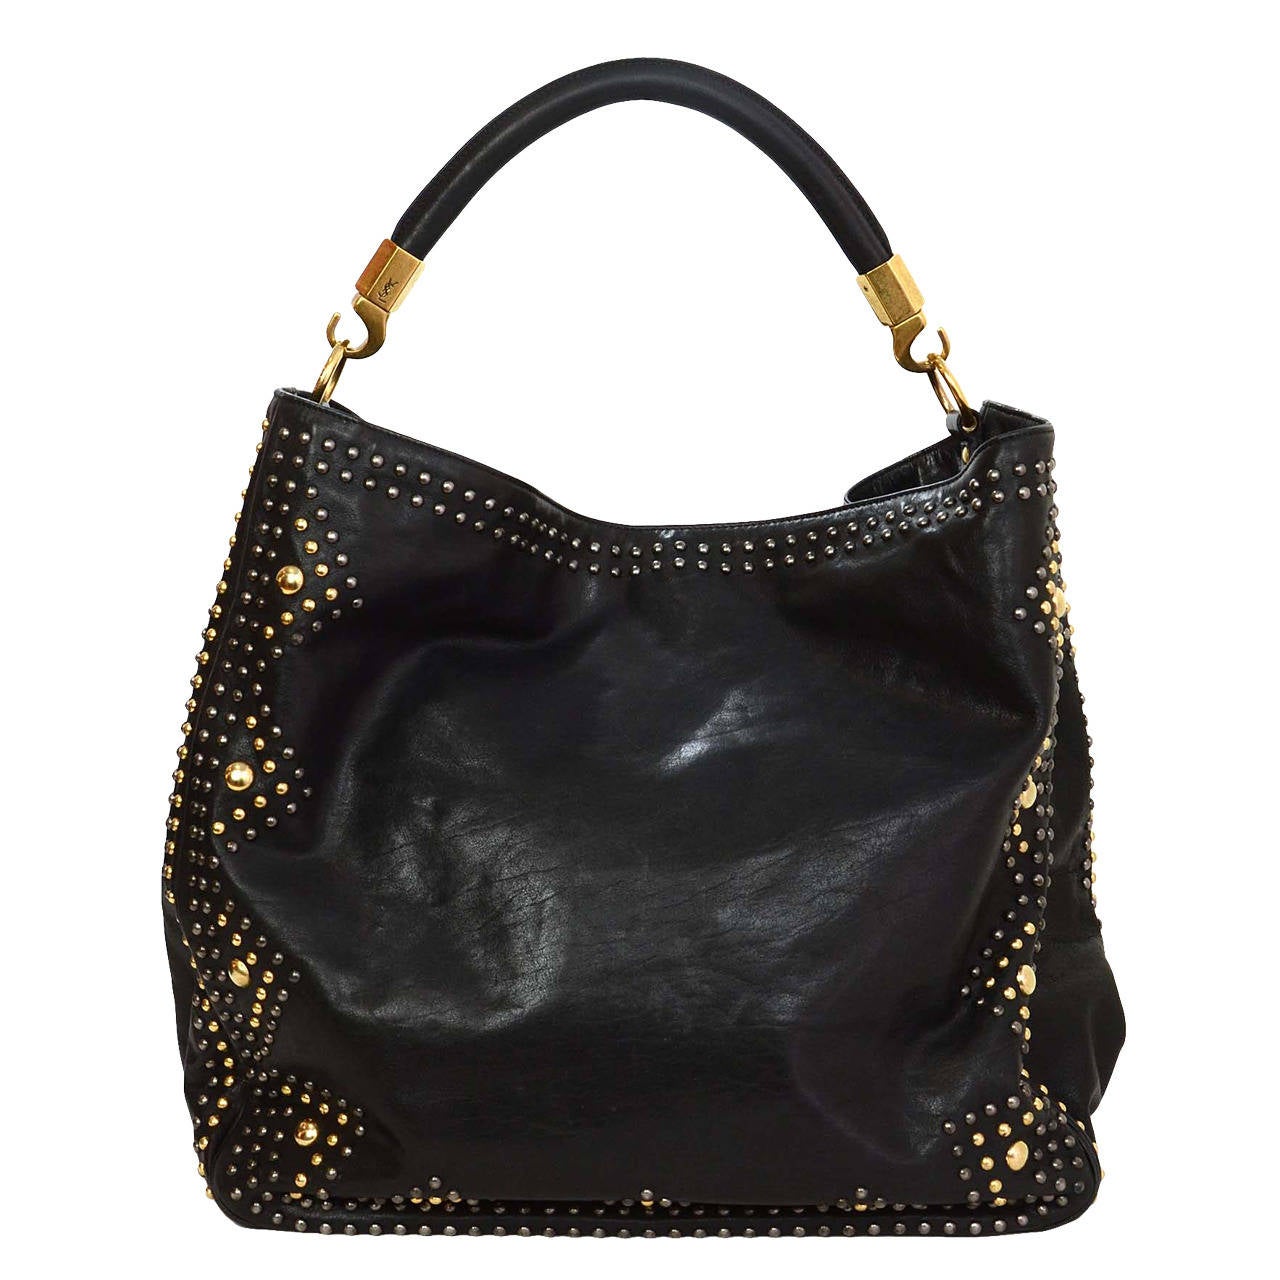 YSL YVES SAINT LAURENT Black Leather Roady Studded Hobo Bag rt. $2,295 at 1stdibs